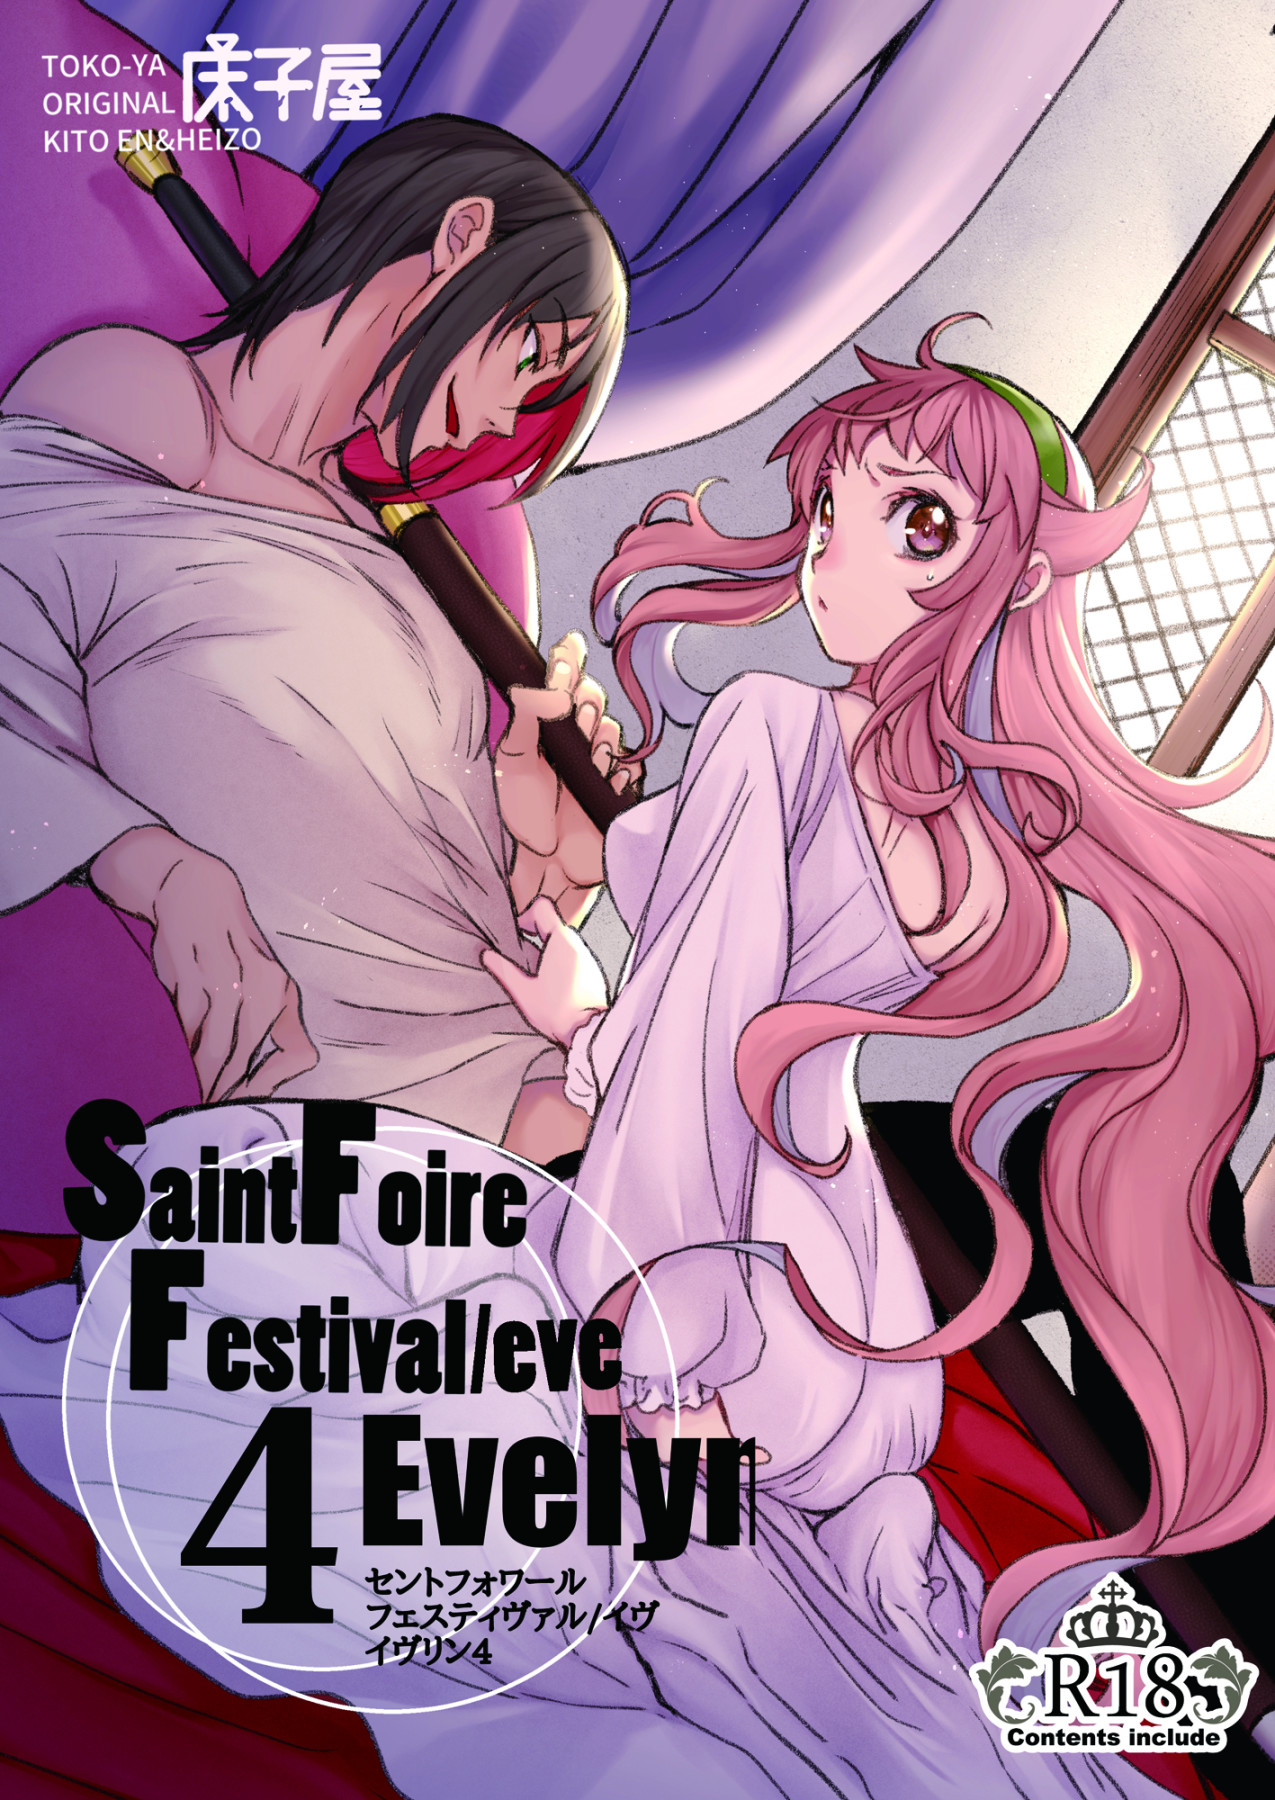 Hentai Manga Comic-Saint Foire Festival/Eve Evelyn:4-Read-1